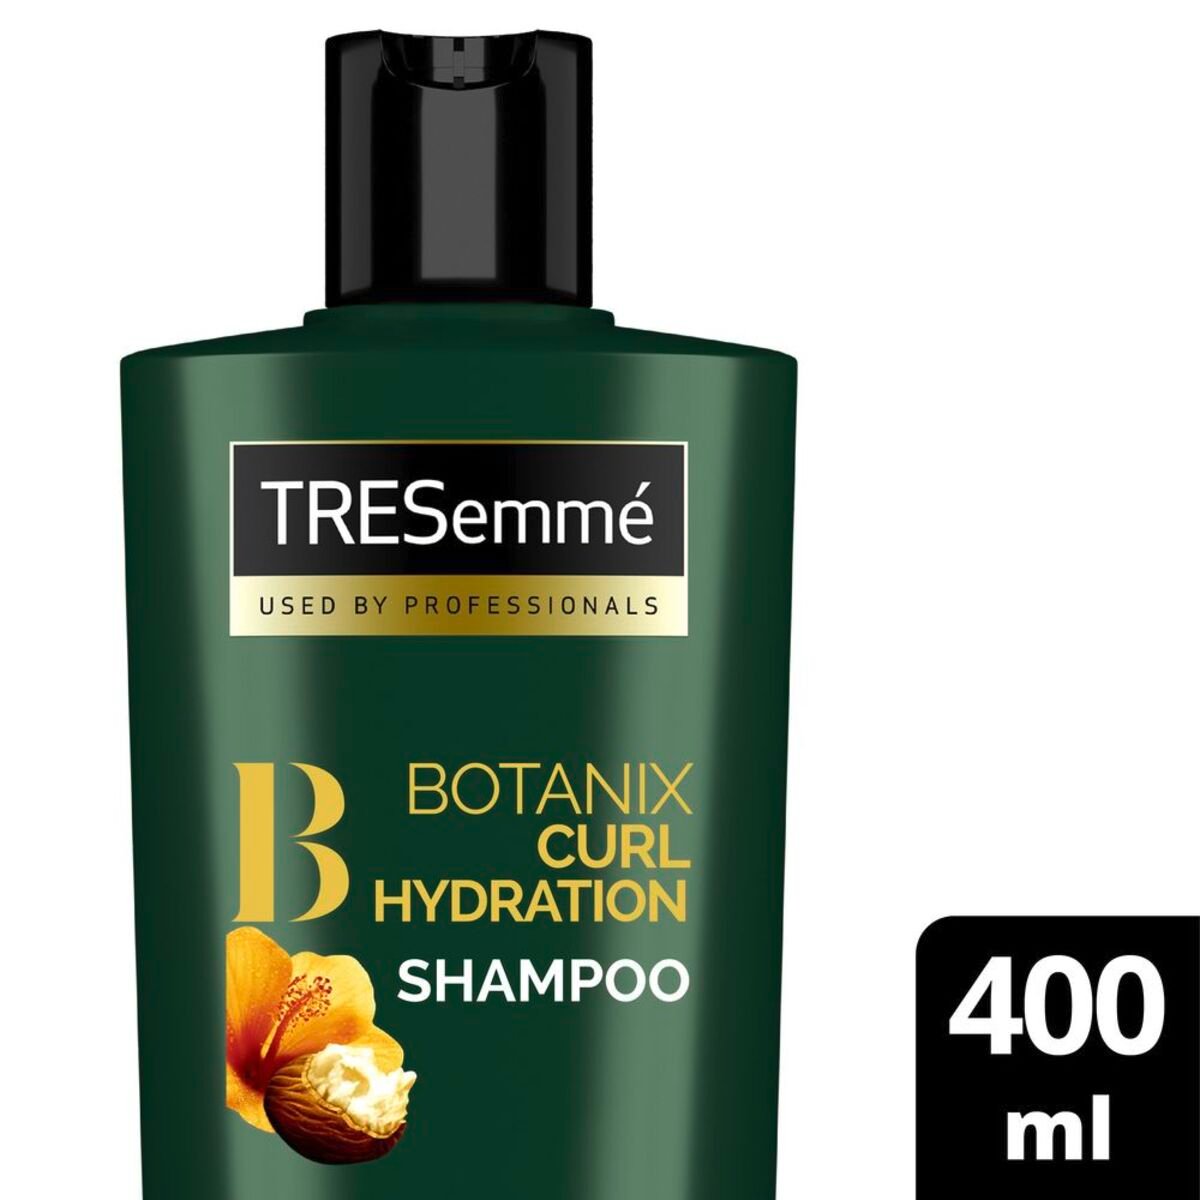 اشتري قم بشراء ترسيمي شامبو بوتانيكس الطبيعي لترطيب الشعر الكيرلي بزبدة الشيا والكركديه 400 مل Online at Best Price من الموقع - من لولو هايبر ماركت Shampoo في السعودية